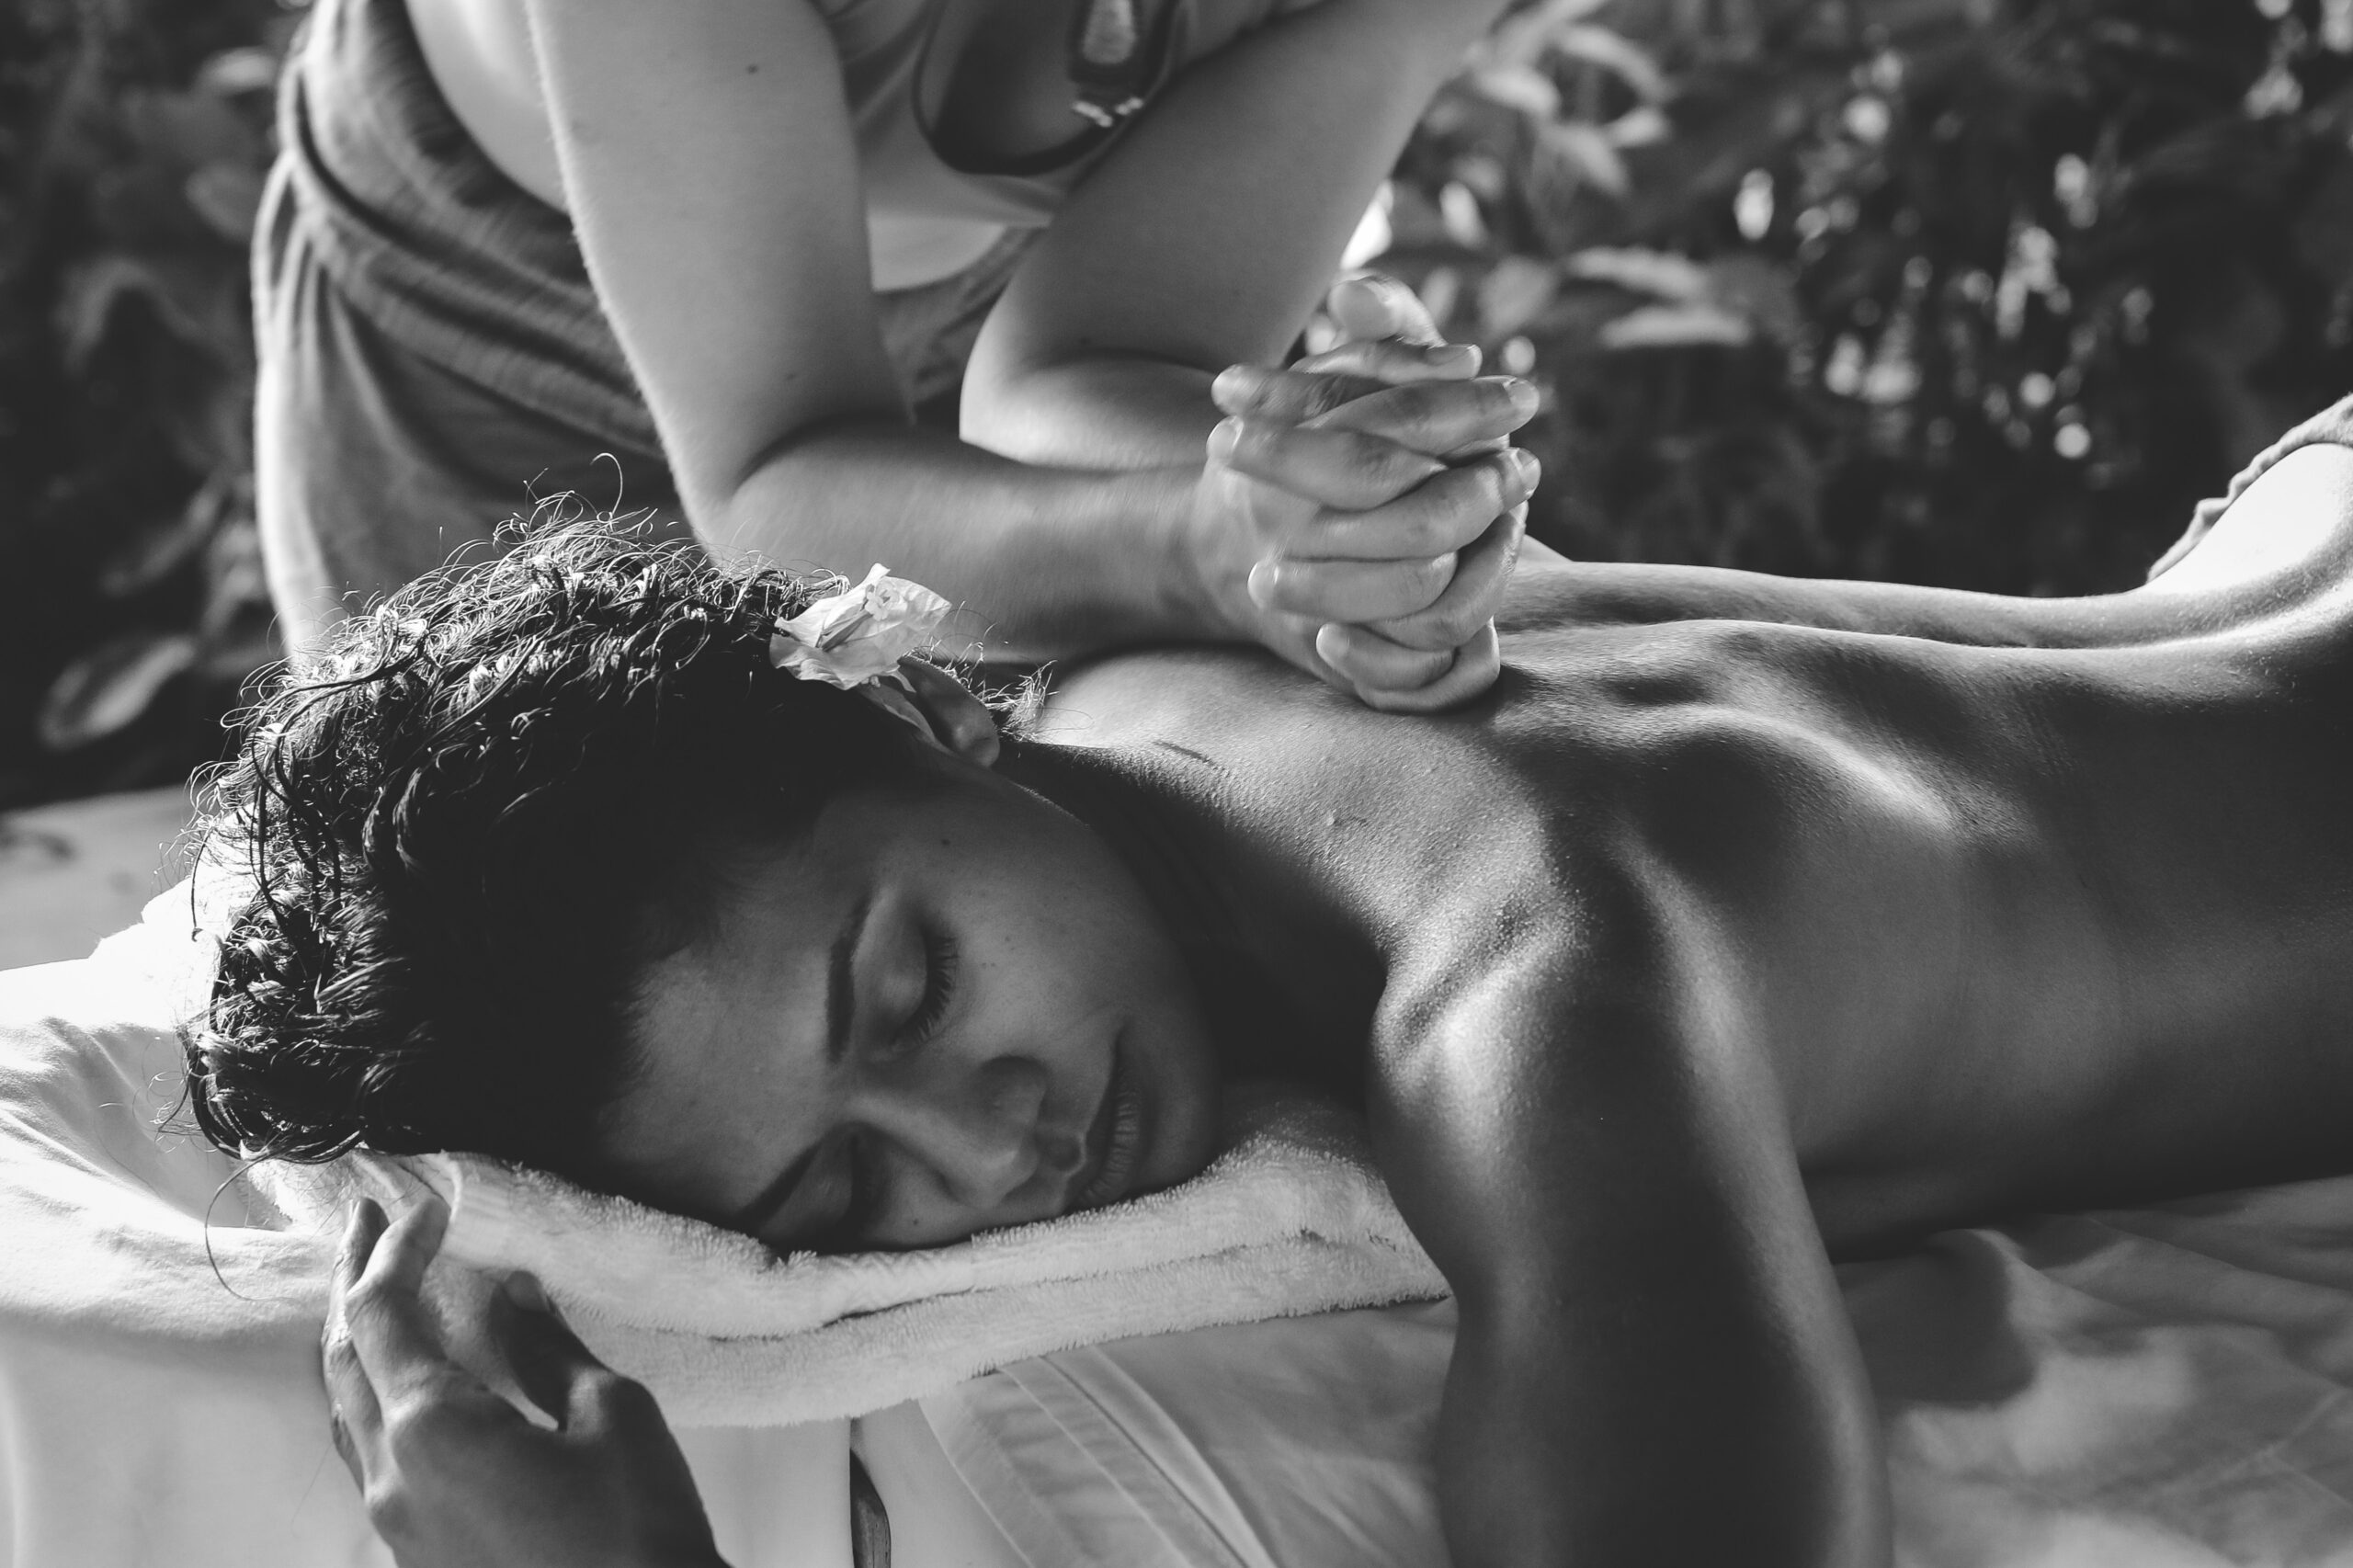 découvrez des séances de massage relaxantes pour soulager le stress et les tensions du quotidien. profitez d'un moment de détente et de bien-être dans un cadre apaisant.